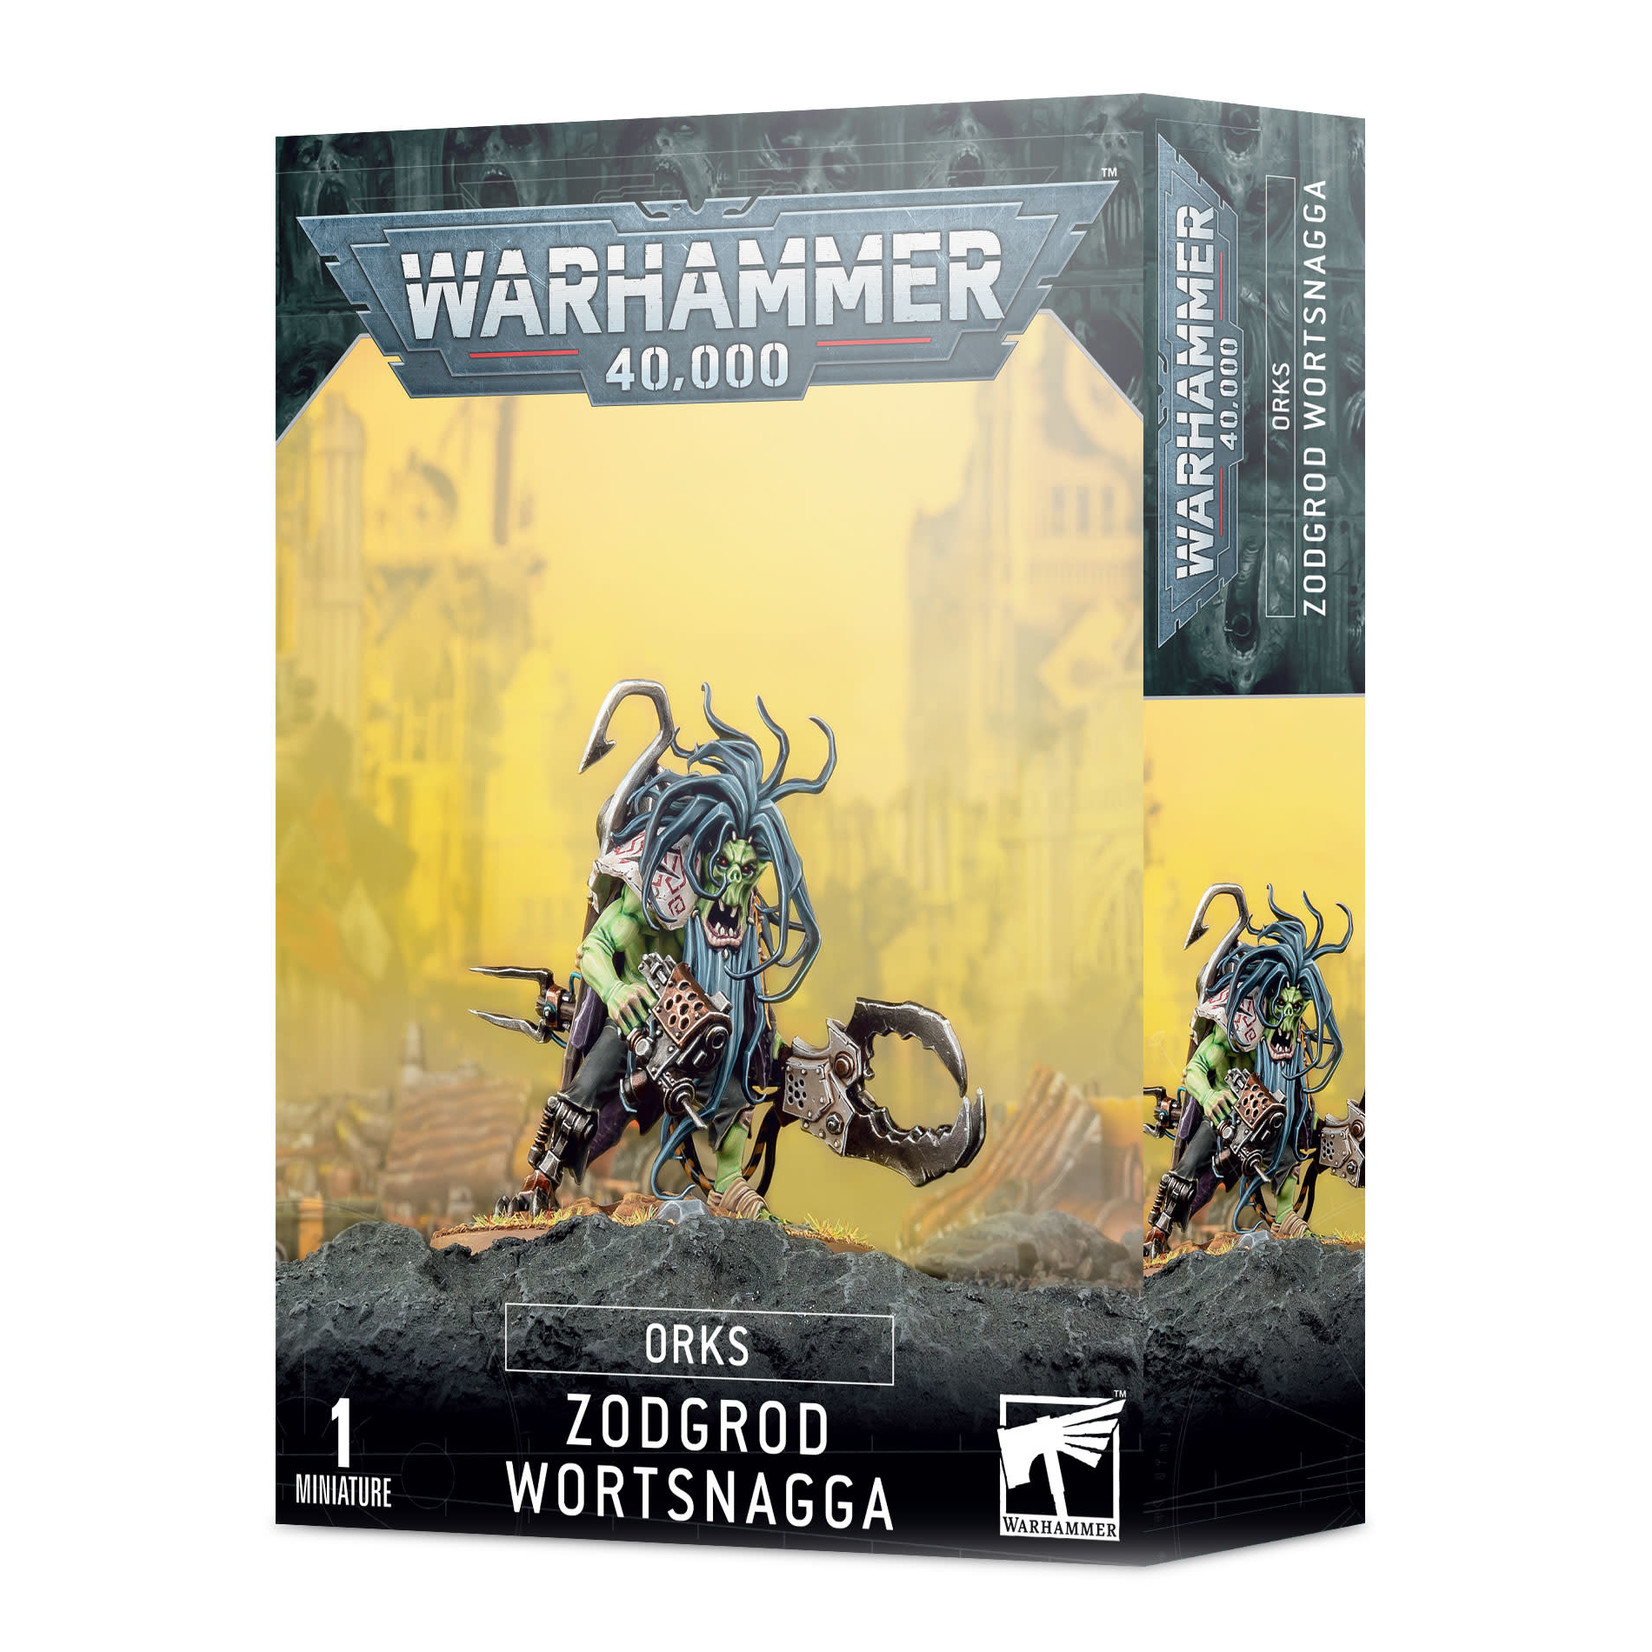 Warhammer 40k Warhammer 40k: Orks: Zodgrod Wortsnagga